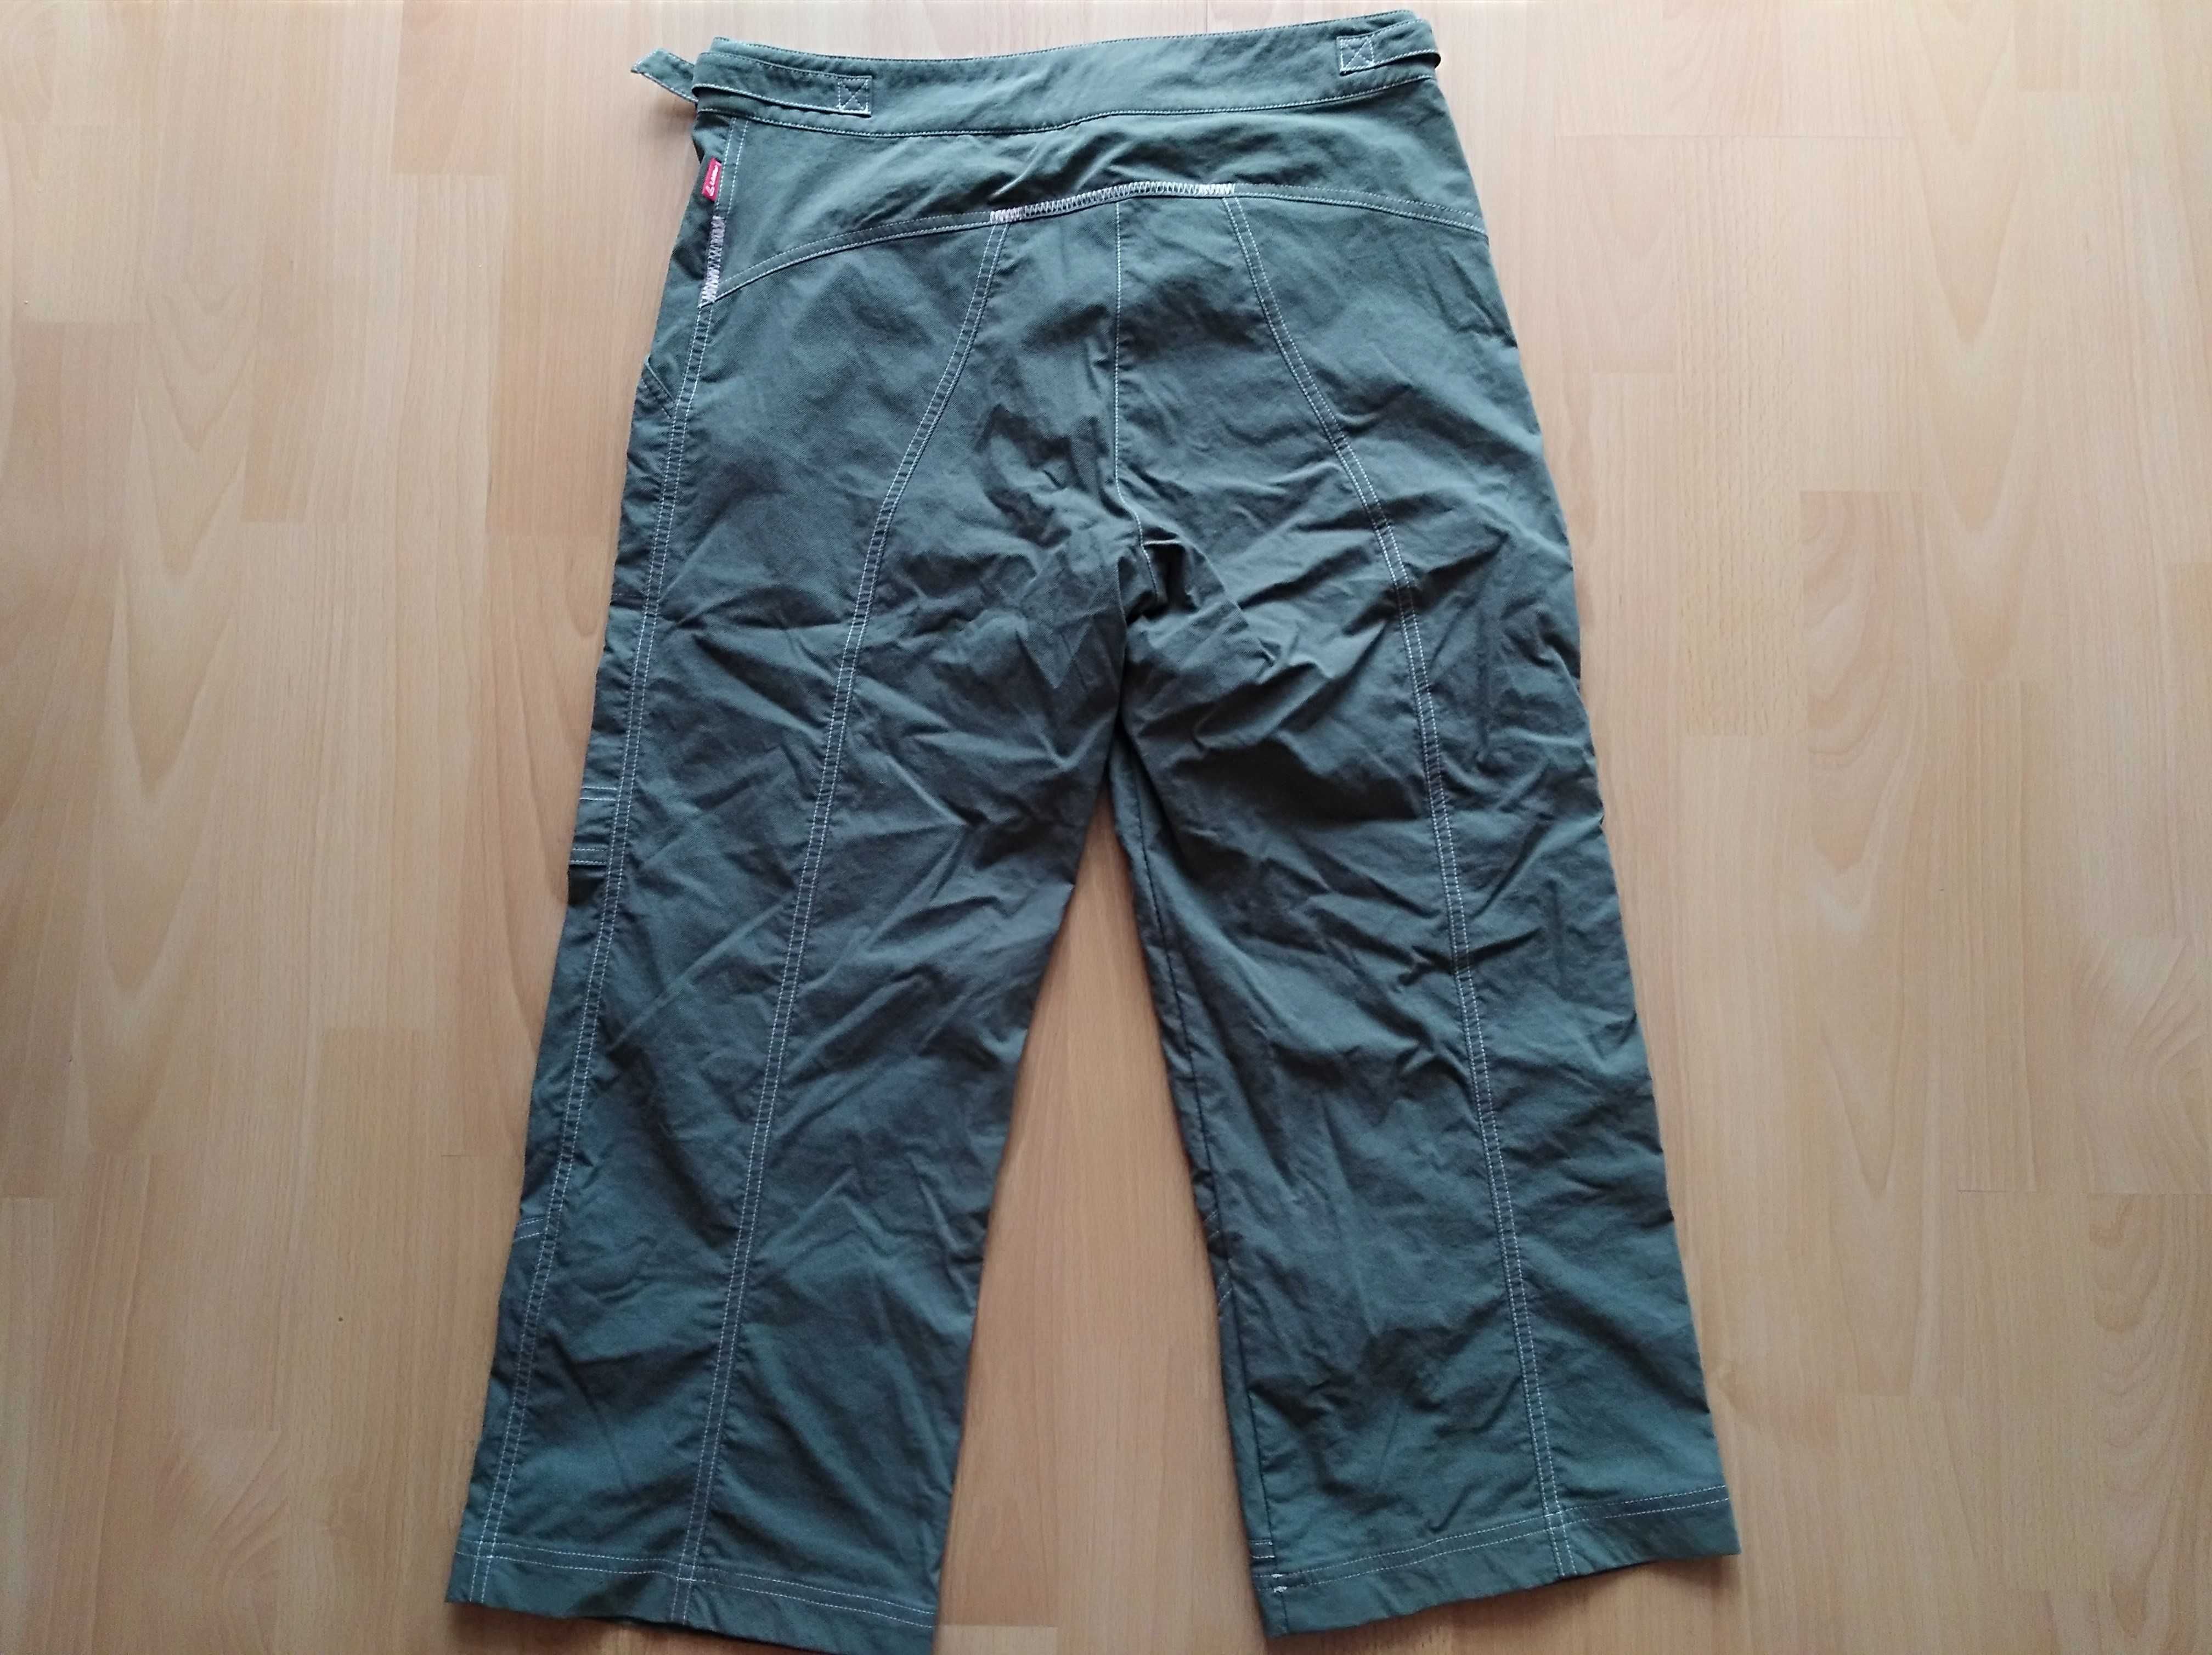 OFFLER spodnie trekkingowe damskie rozmiar 38